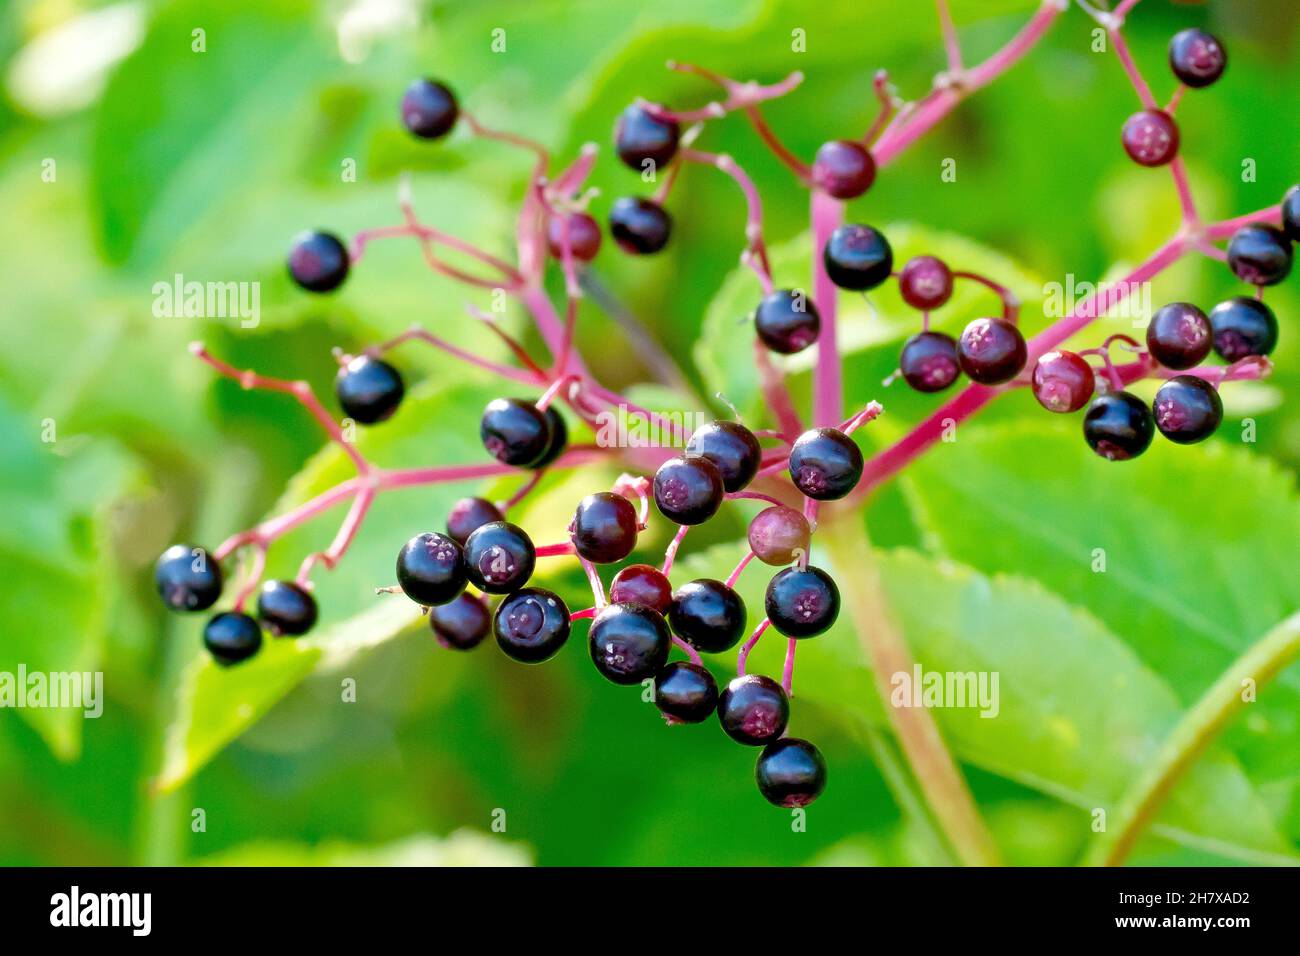 Holunder, Holunderblüte oder Holunderbeere (sambucus nigra), Nahaufnahme mit ein paar verbleibenden schwarzen Früchten oder Beeren, die im Frühherbst auf dem Strauch verblieben sind. Stockfoto